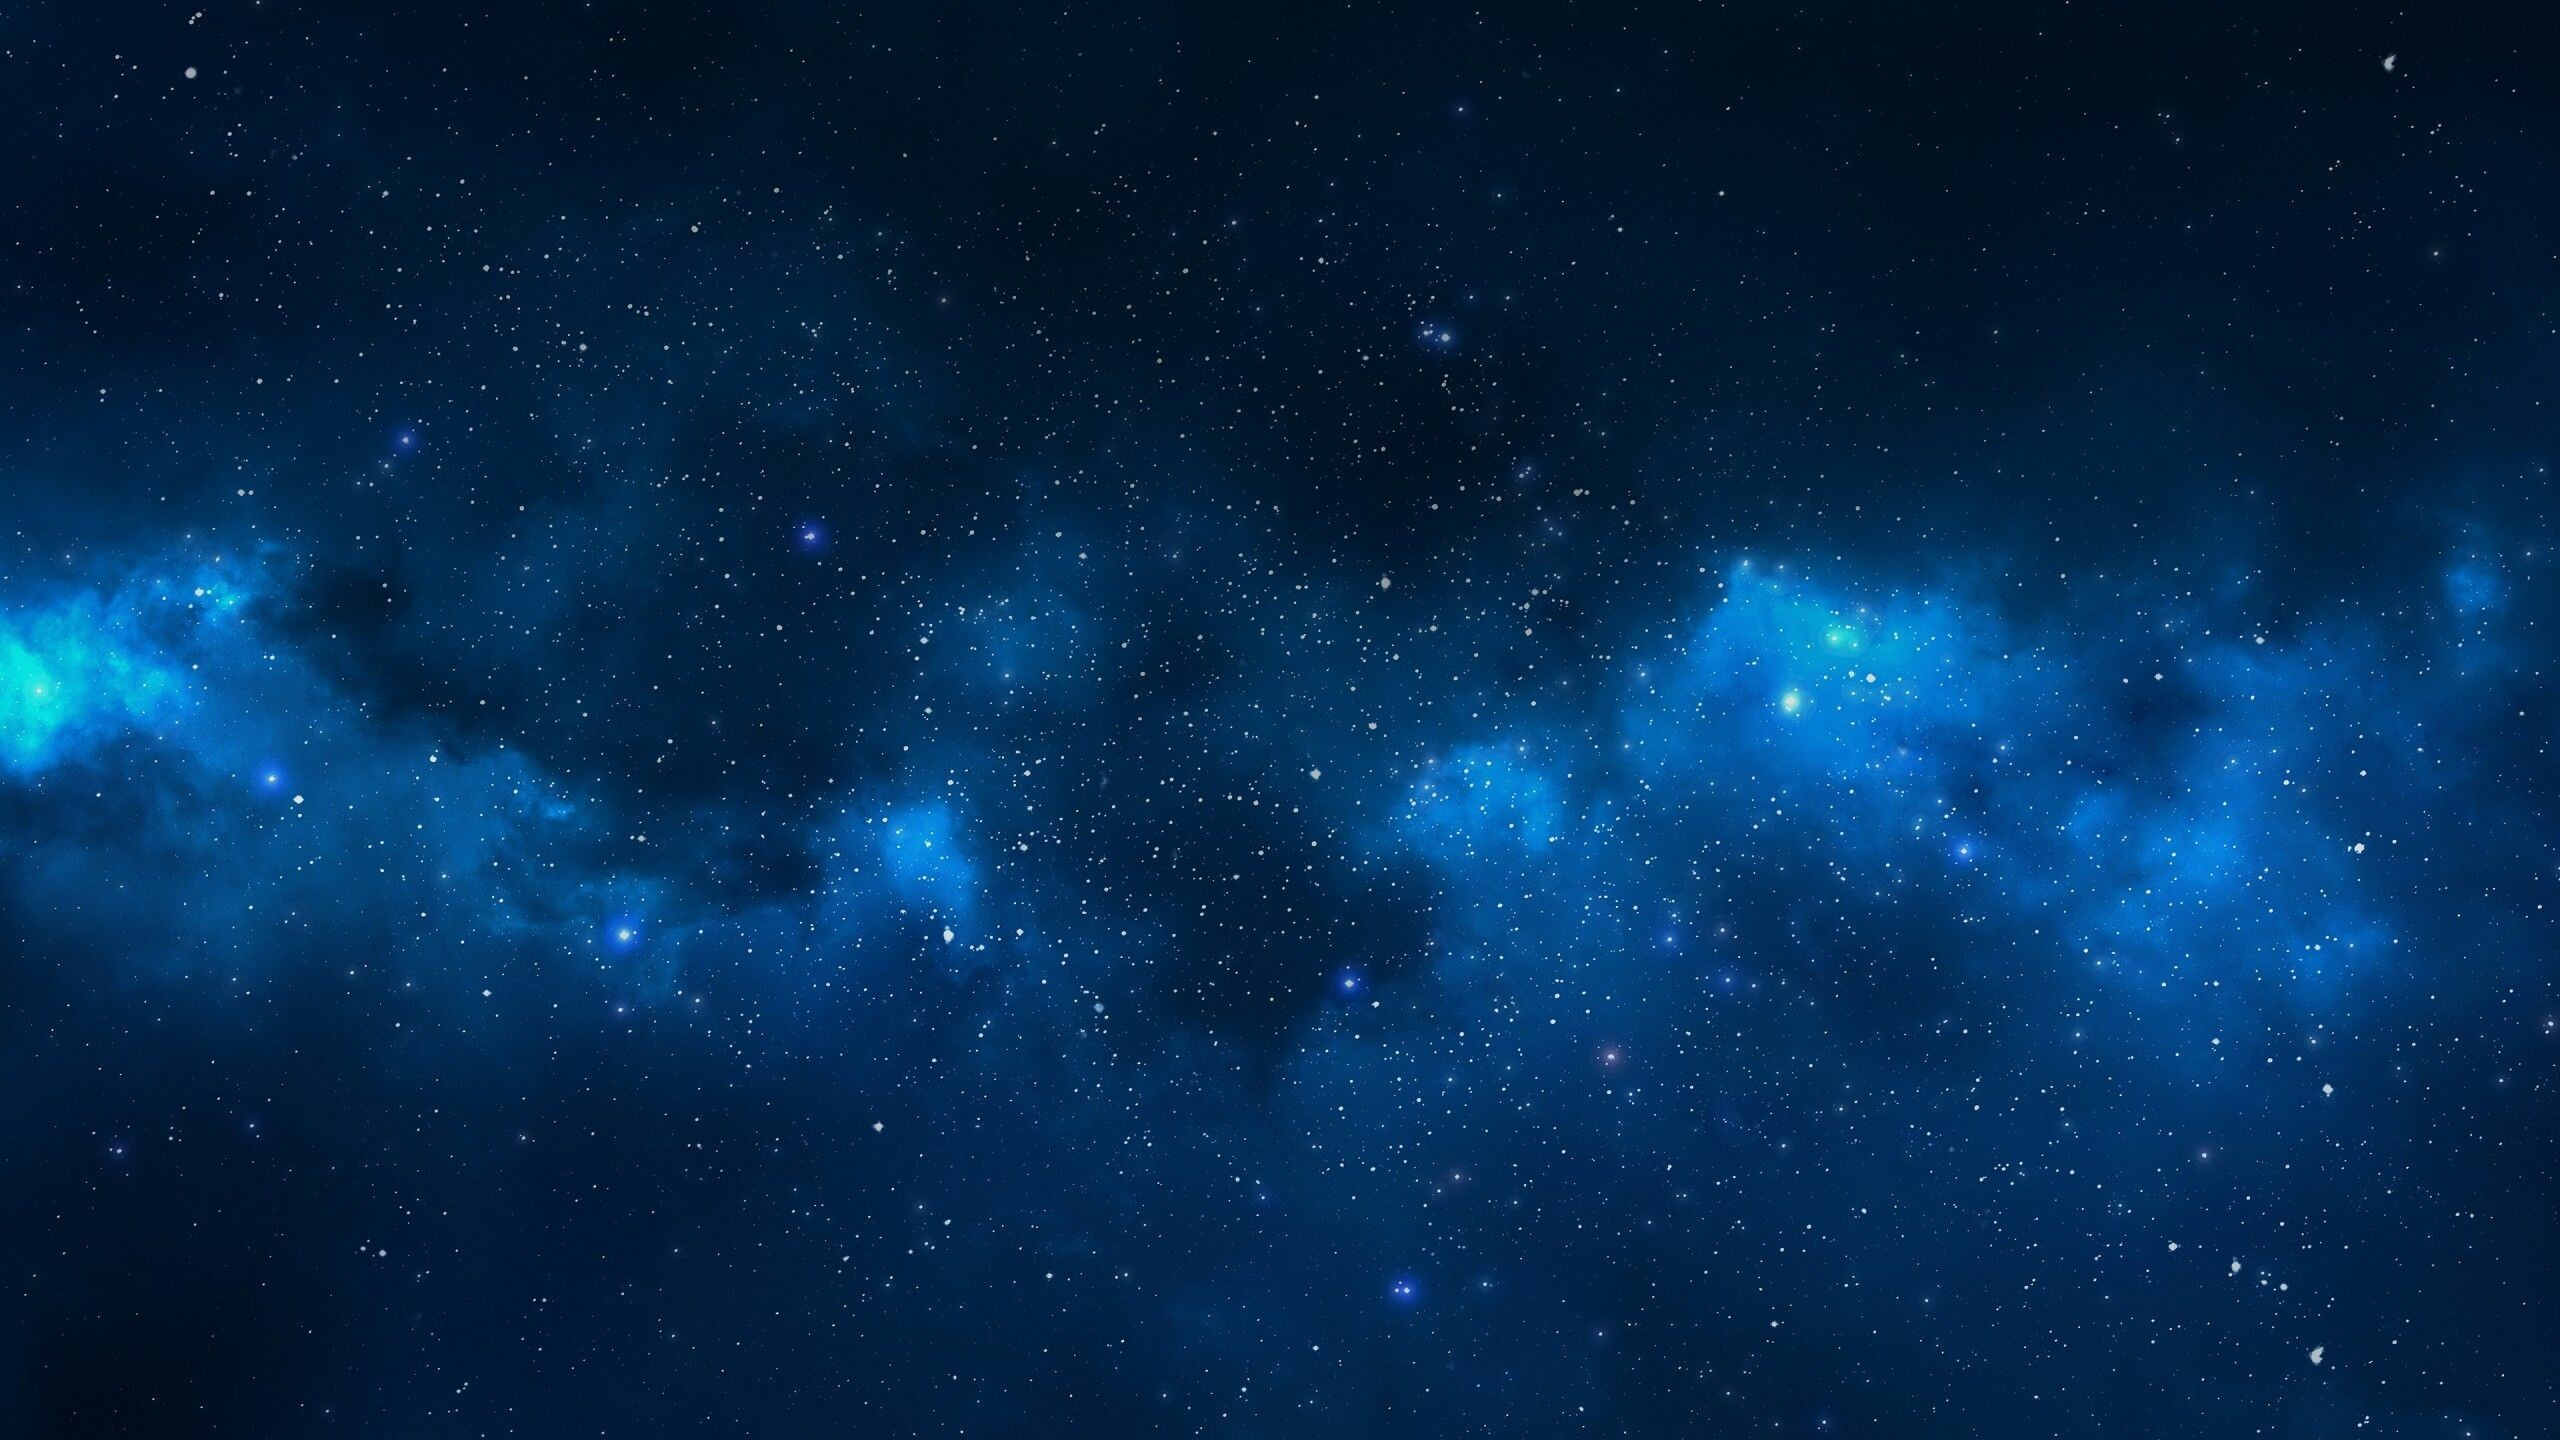 Galaxy: The vast pool of stars, stellar remnants, dark matter and interstellar gas and dust. 2560x1440 HD Wallpaper.